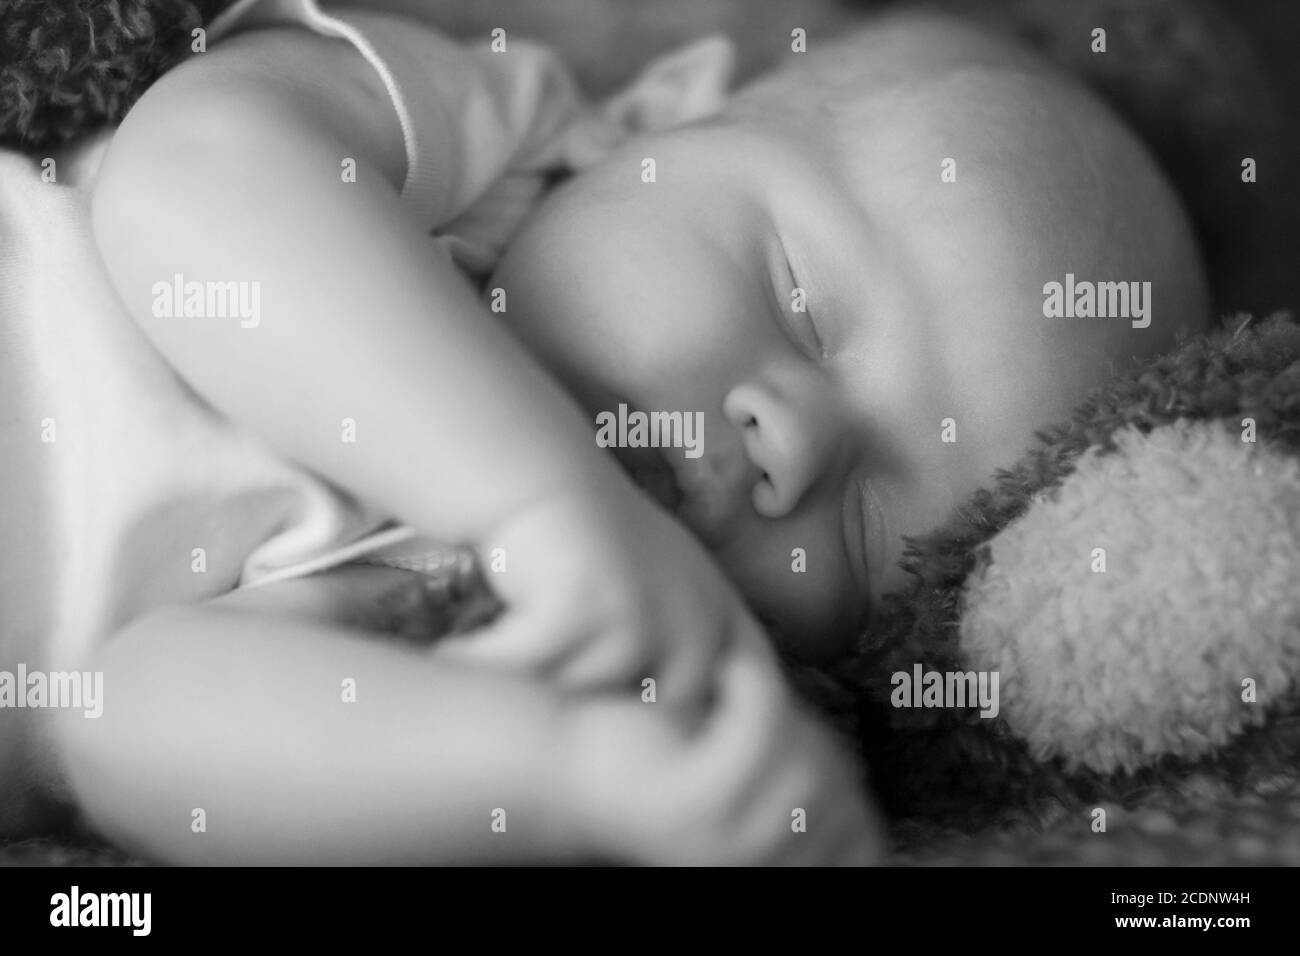 Immagine in bianco e nero di un bambino che dorme su giro di un orsacchiotto Foto Stock